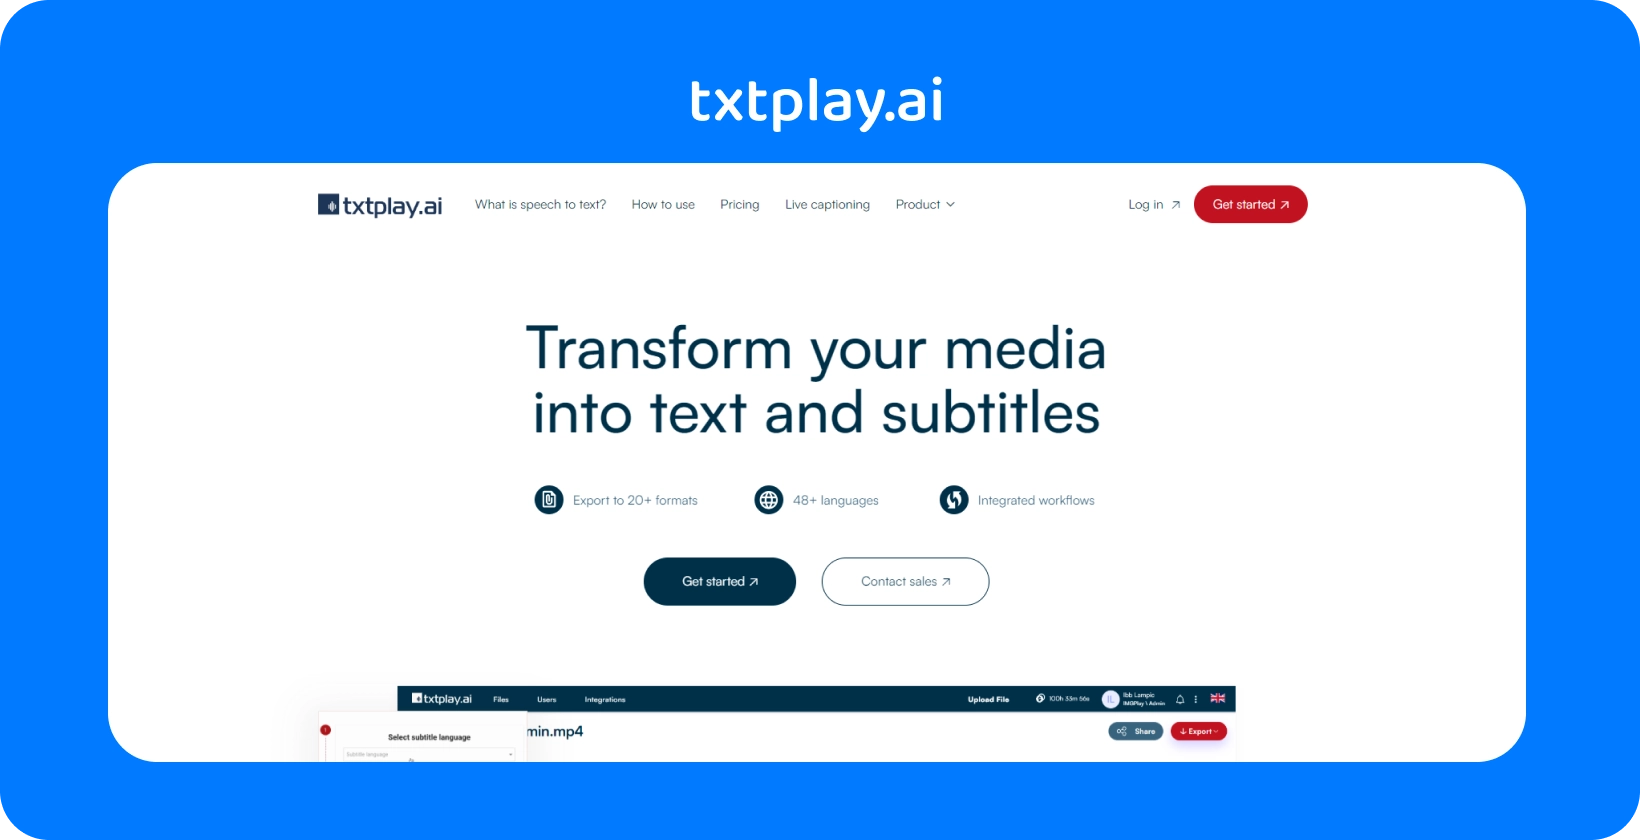 แปลงสื่อเป็นข้อความและคําบรรยายด้วย txtplay.ai รองรับ 48+ ภาษาและ 20+ รูปแบบ